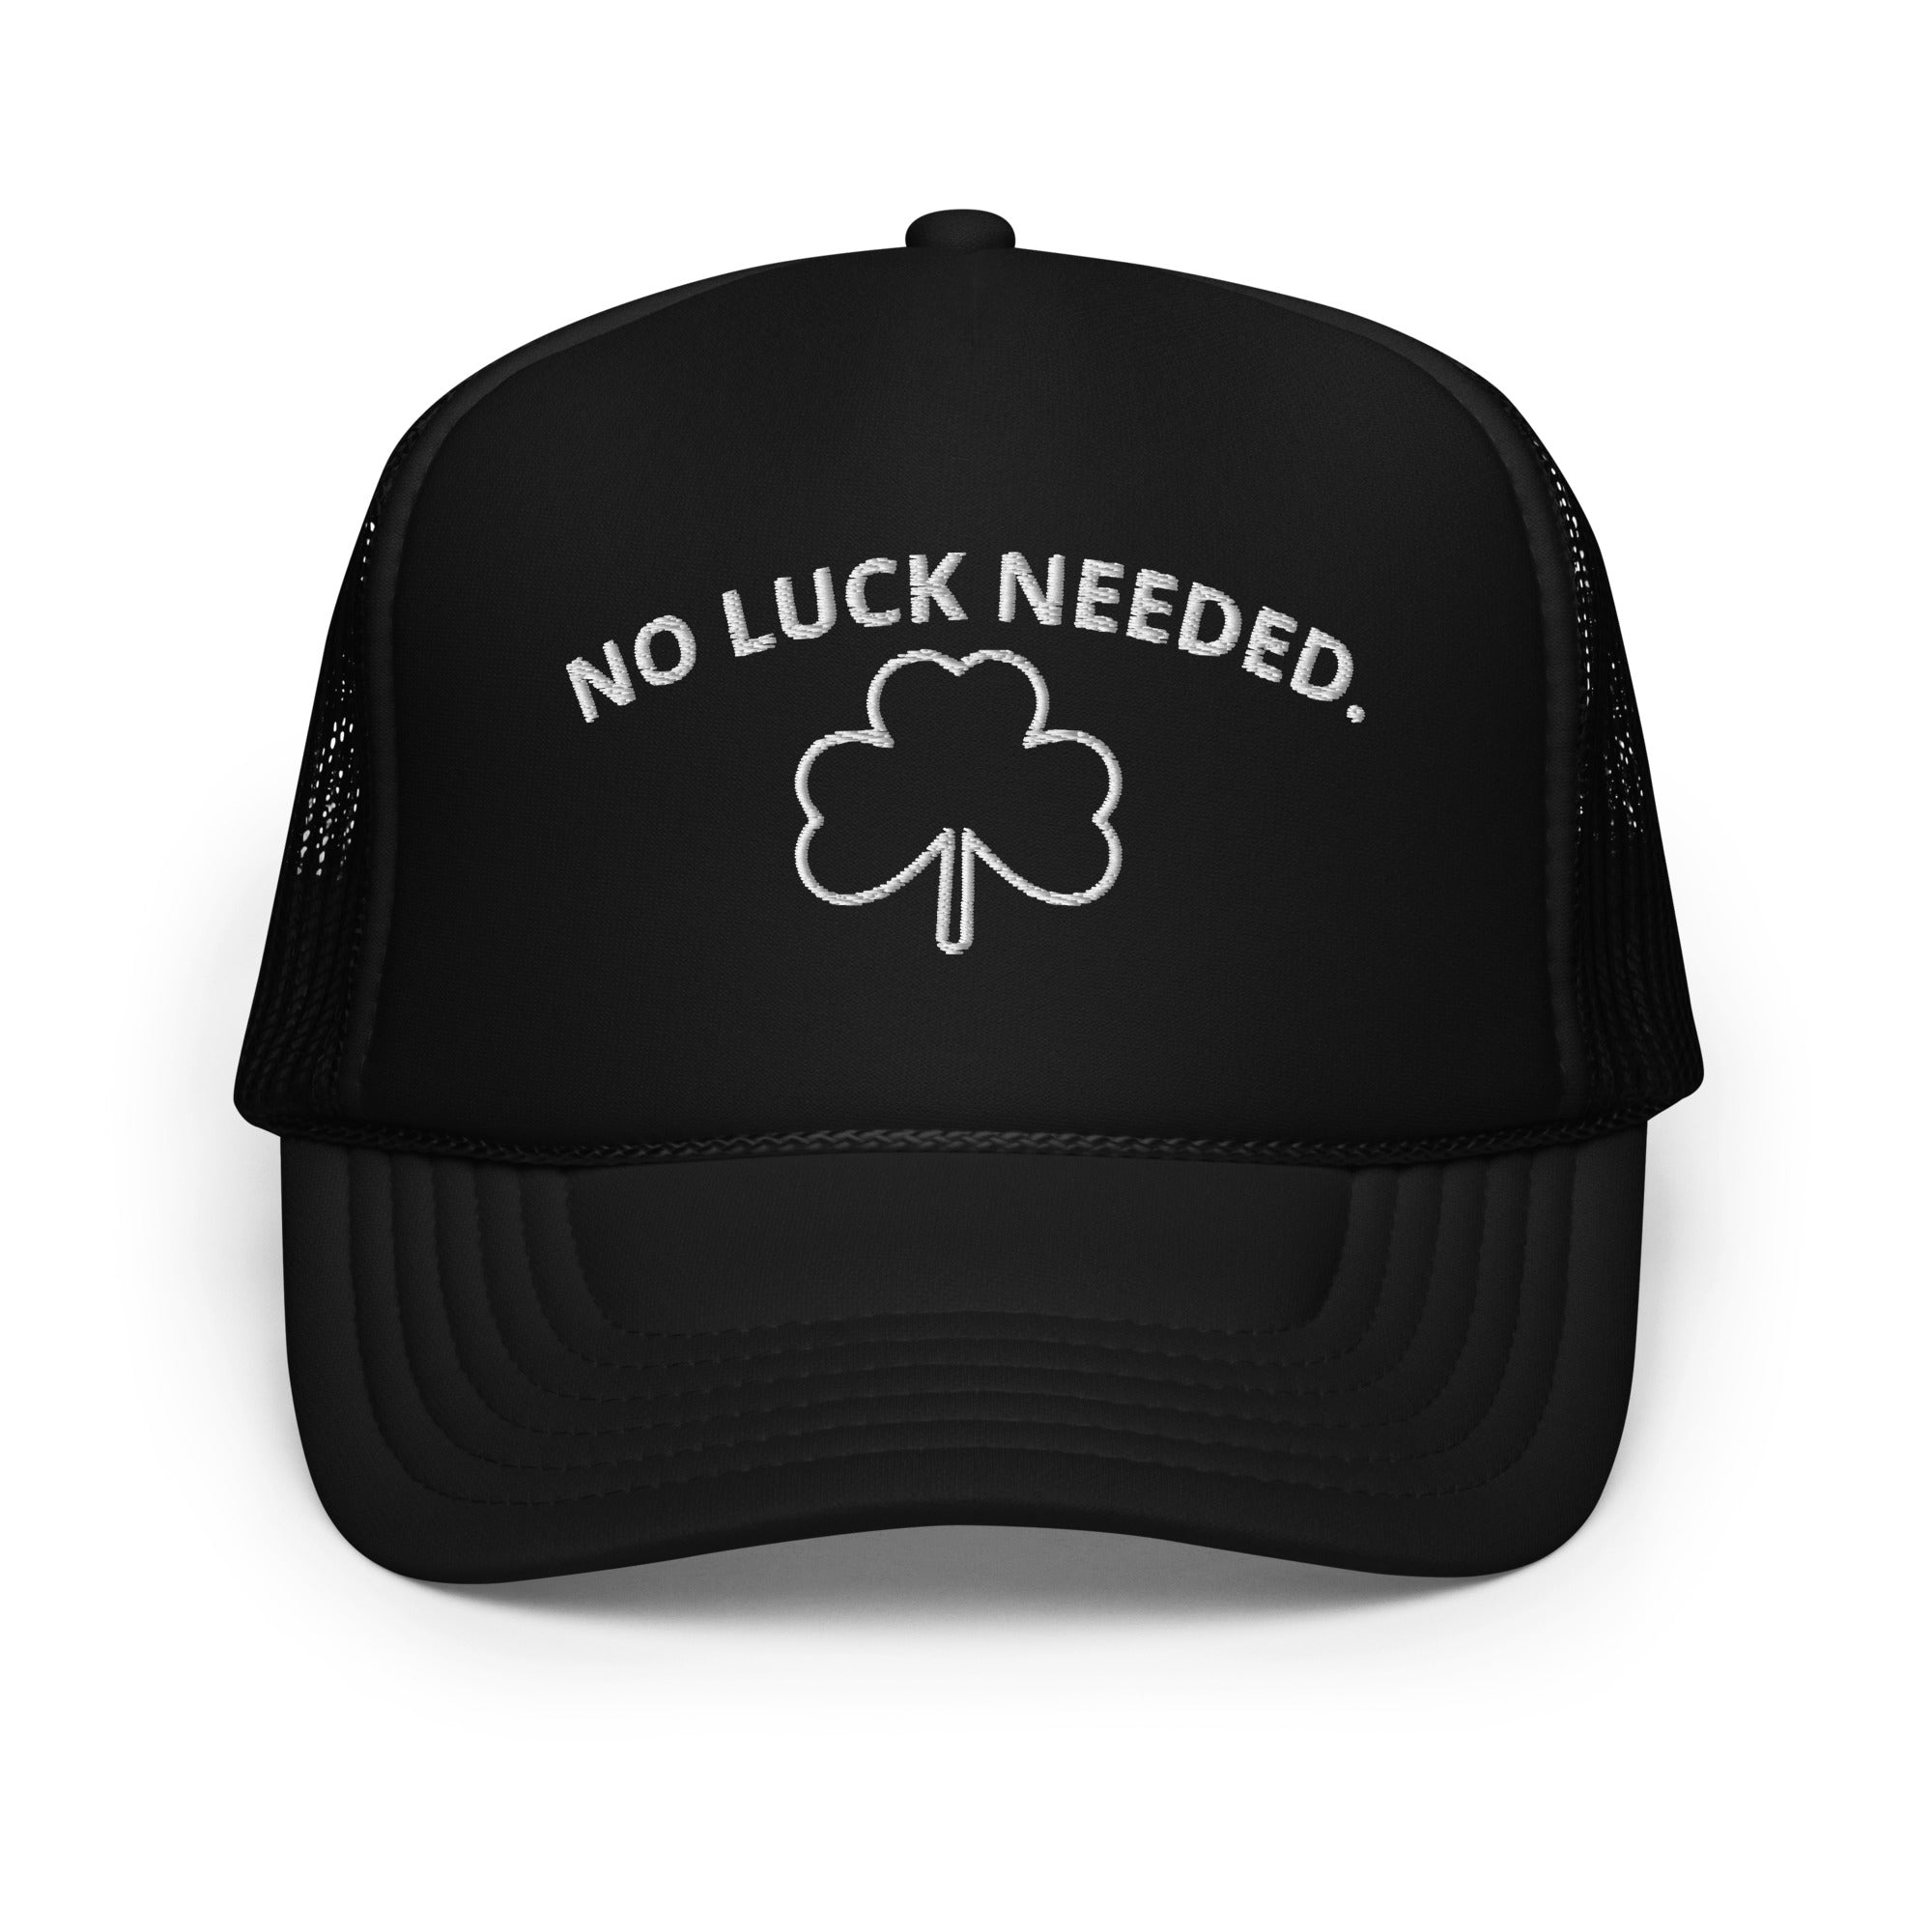 "No Luck Needed." Foam Trucker Hat